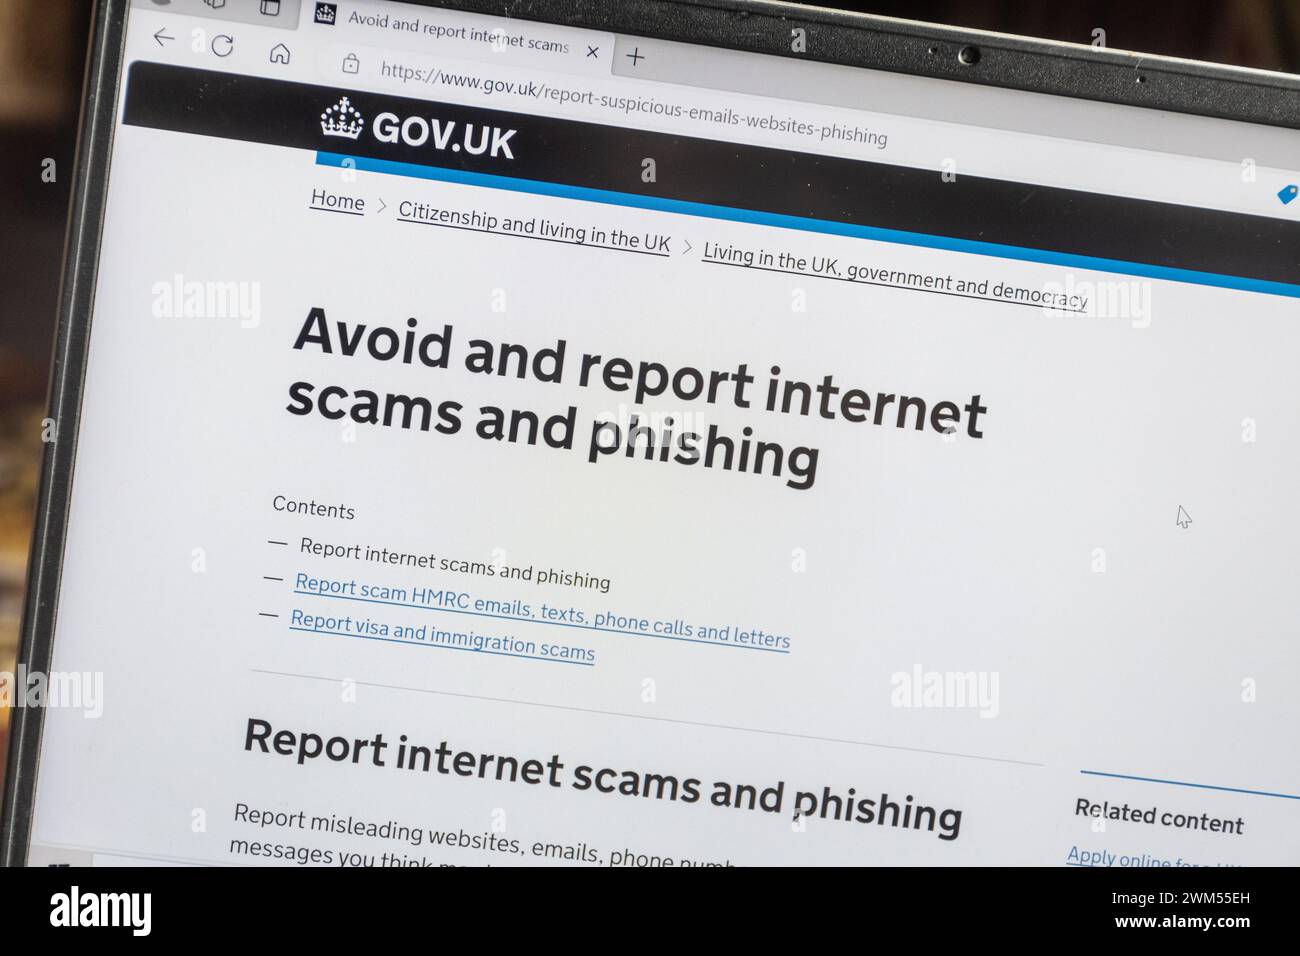 Site Web Gov.uk donnant des informations sur la façon d'éviter et de signaler les escroqueries sur Internet et le phishing Banque D'Images